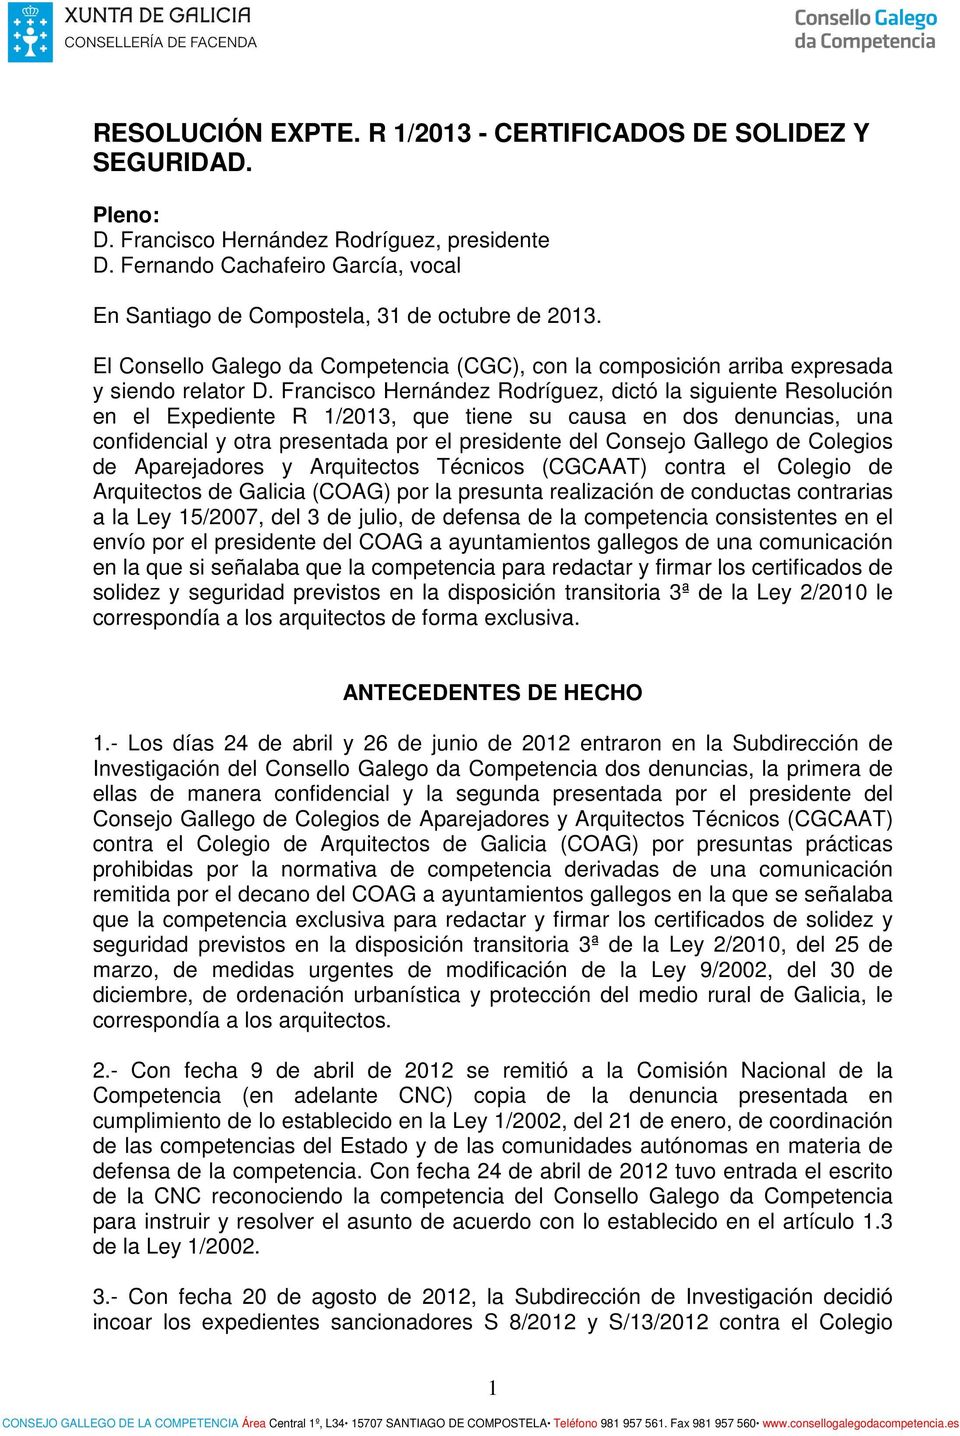 Francisco Hernández Rodríguez, dictó la siguiente Resolución en el Expediente R 1/2013, que tiene su causa en dos denuncias, una confidencial y otra presentada por el presidente del Consejo Gallego